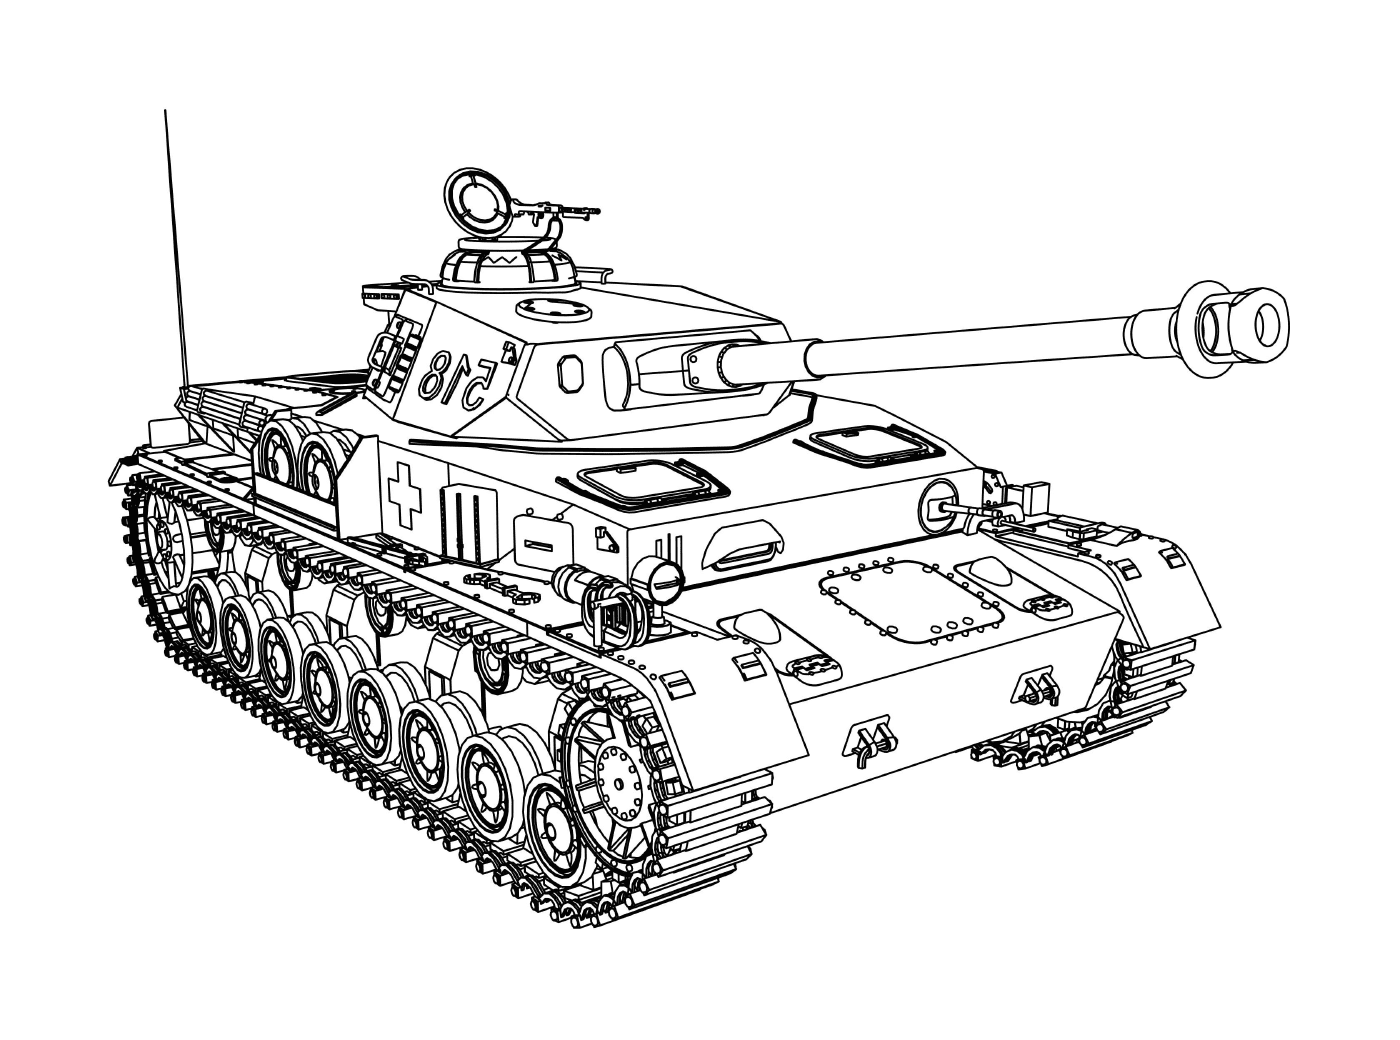  Tank Military Vehicle: un vecchio carro armato militare 